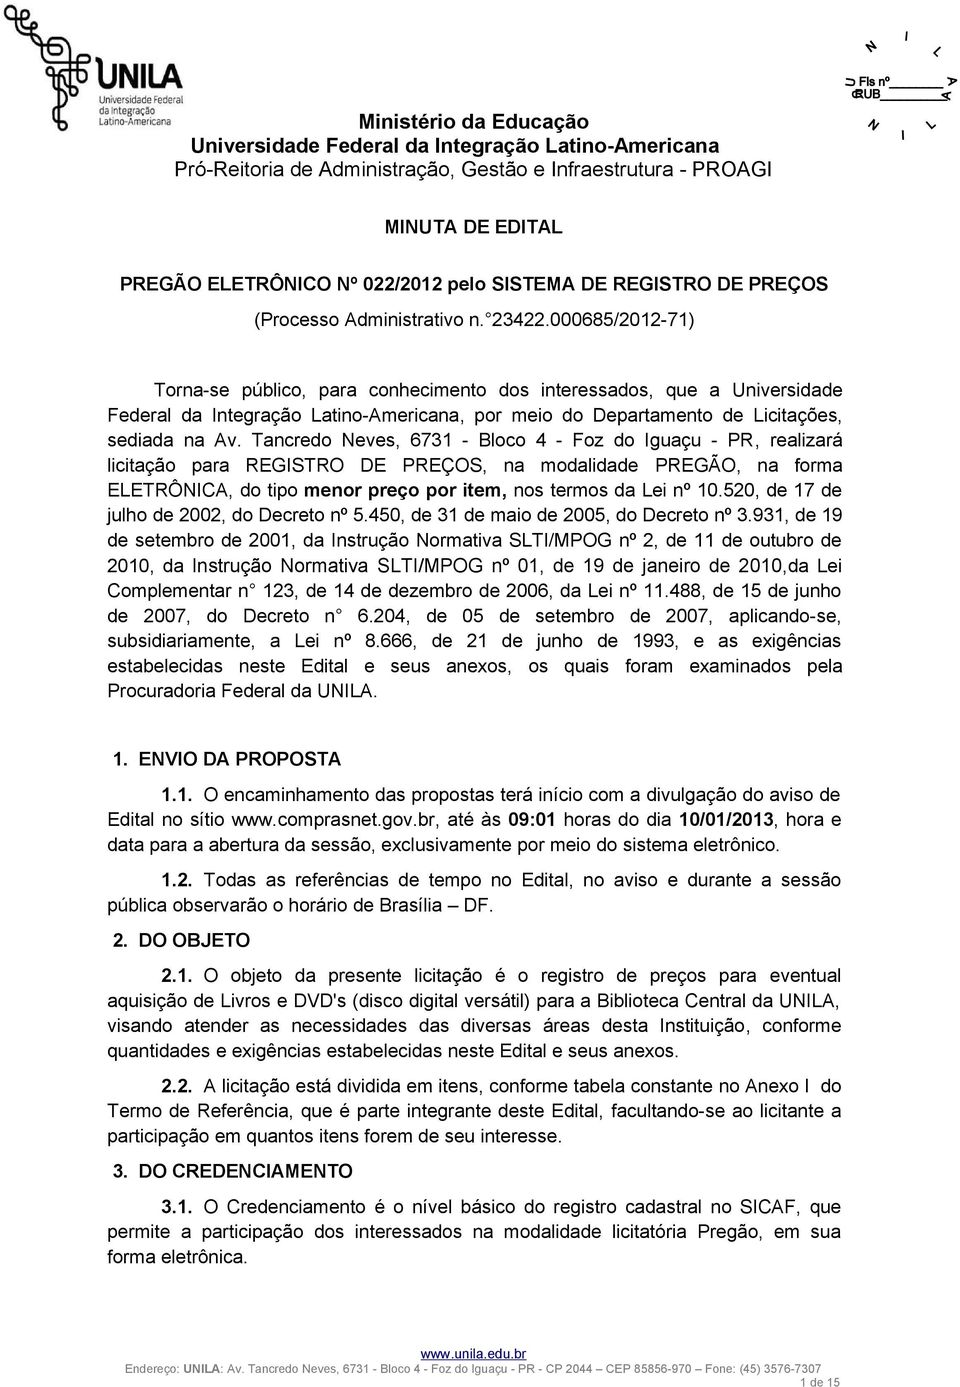 Tancredo Neves, 6731 - Bloco 4 - Foz do Iguaçu - PR, realizará licitação para REGISTRO DE PREÇOS, na modalidade PREGÃO, na forma ELETRÔNICA, do tipo menor preço por item, nos termos da Lei nº 10.